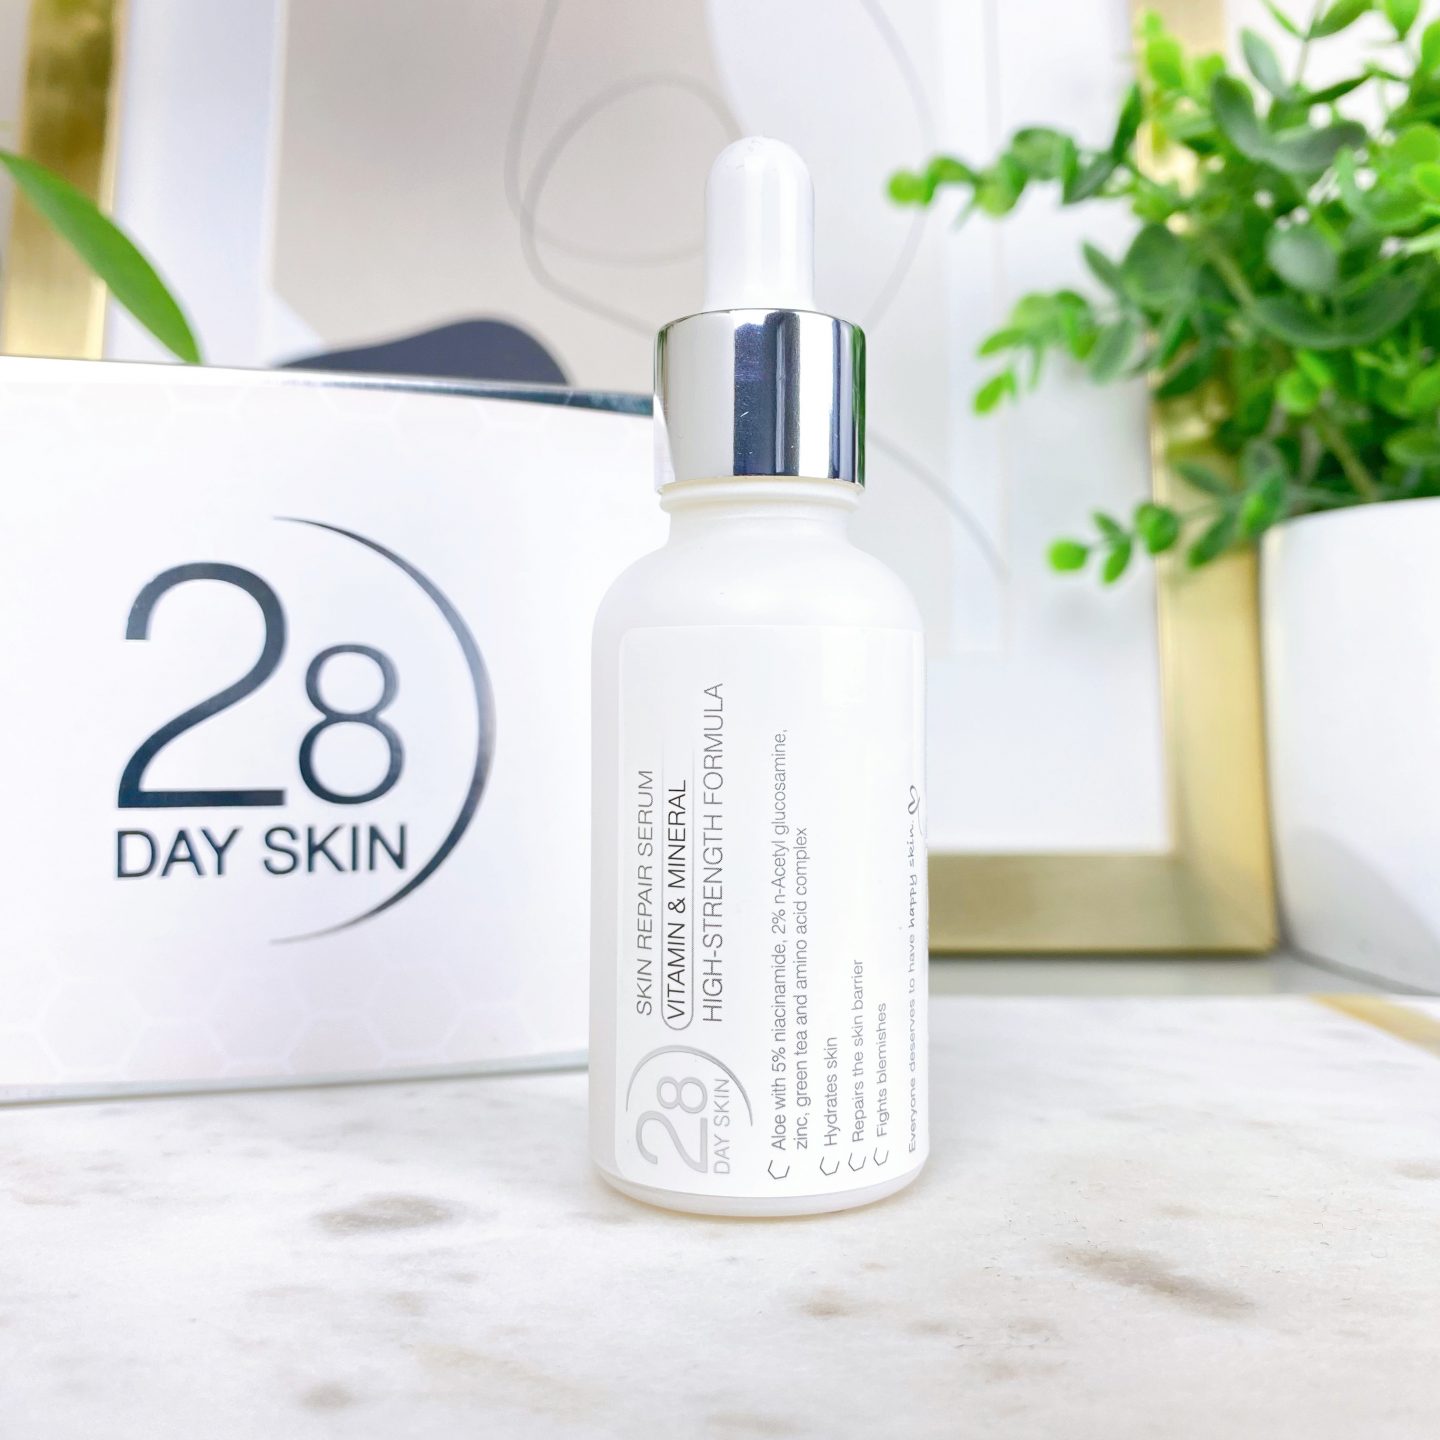 28 Day Skin Skin Repair Serum Review